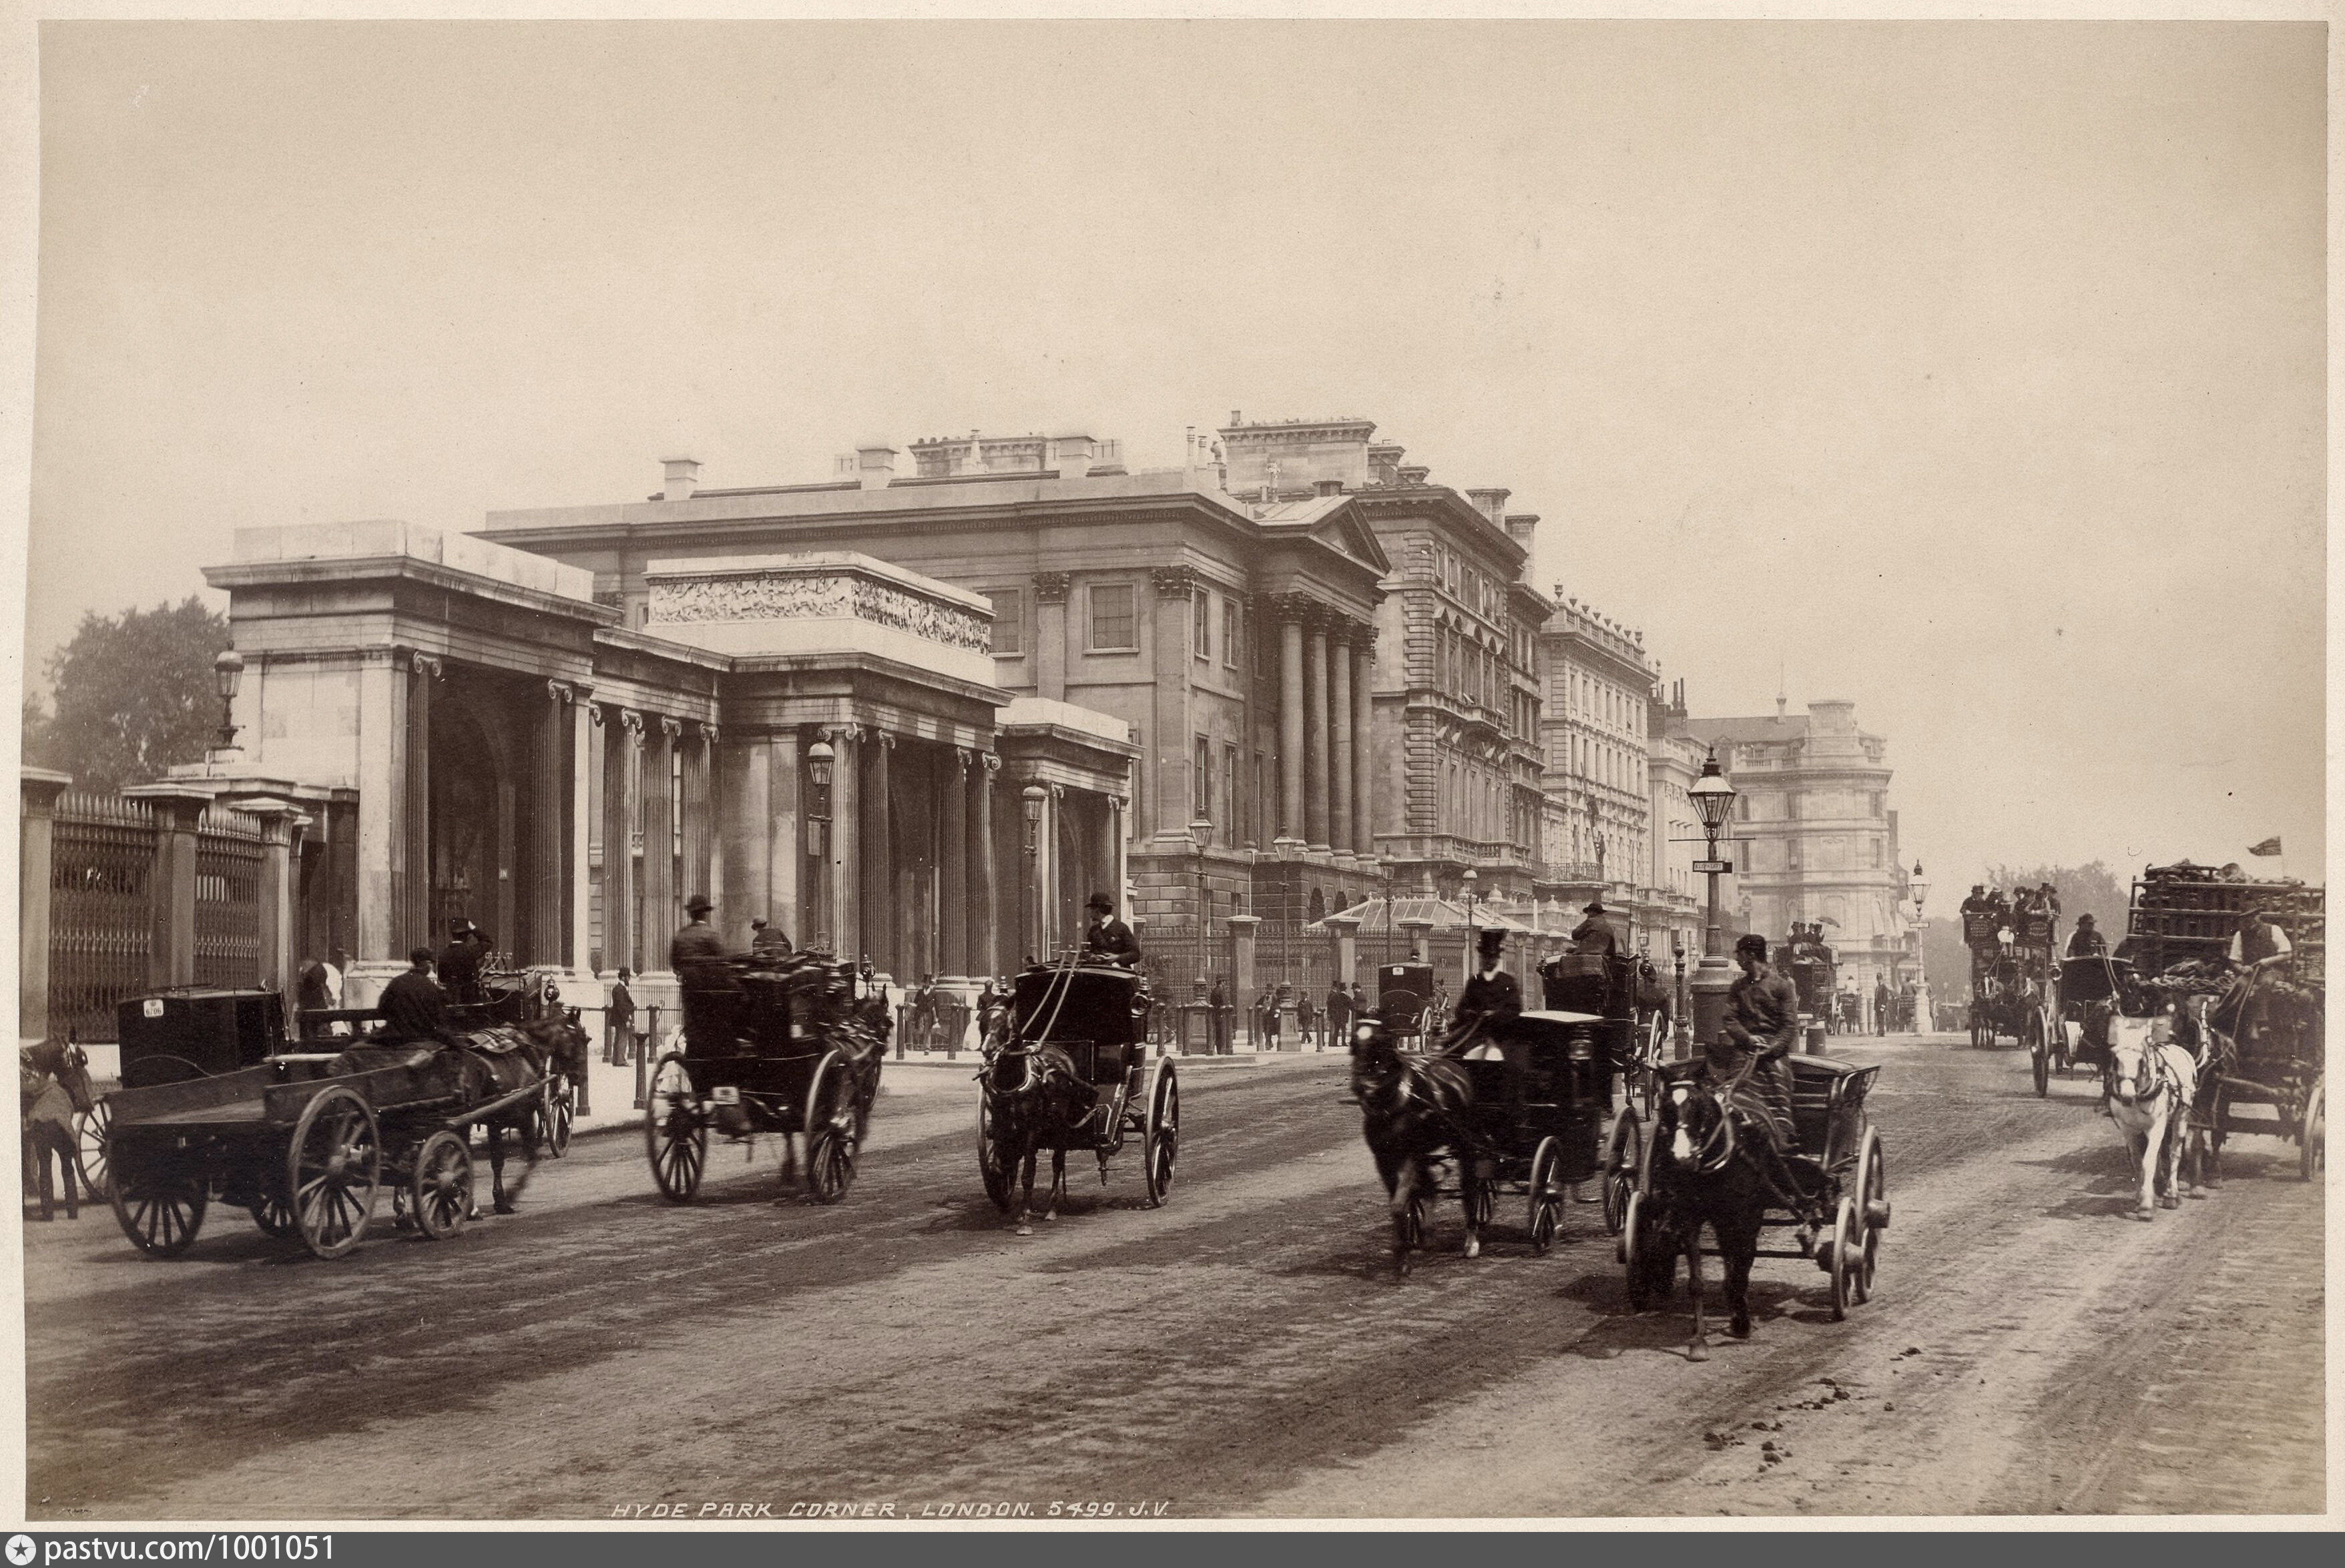 Xix century. Лондон конца 19 века. Хайд парк в Лондоне 19 век. Лондон 19 век фотографии. Великобритания в конце 19 начале 20 века.